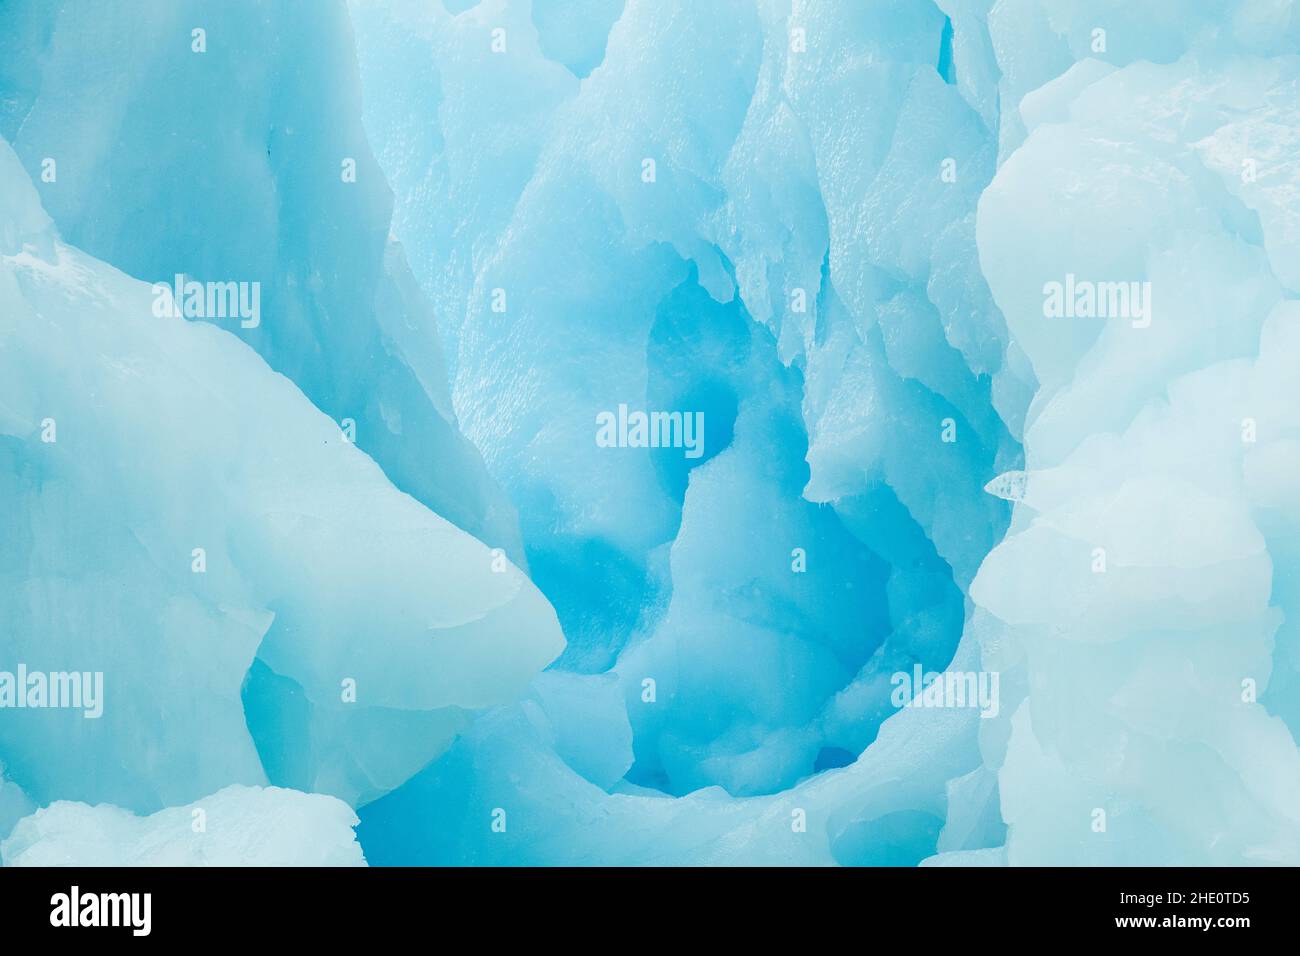 Canal dans un iceberg bleu causé par la fonte et l'érosion. Banque D'Images